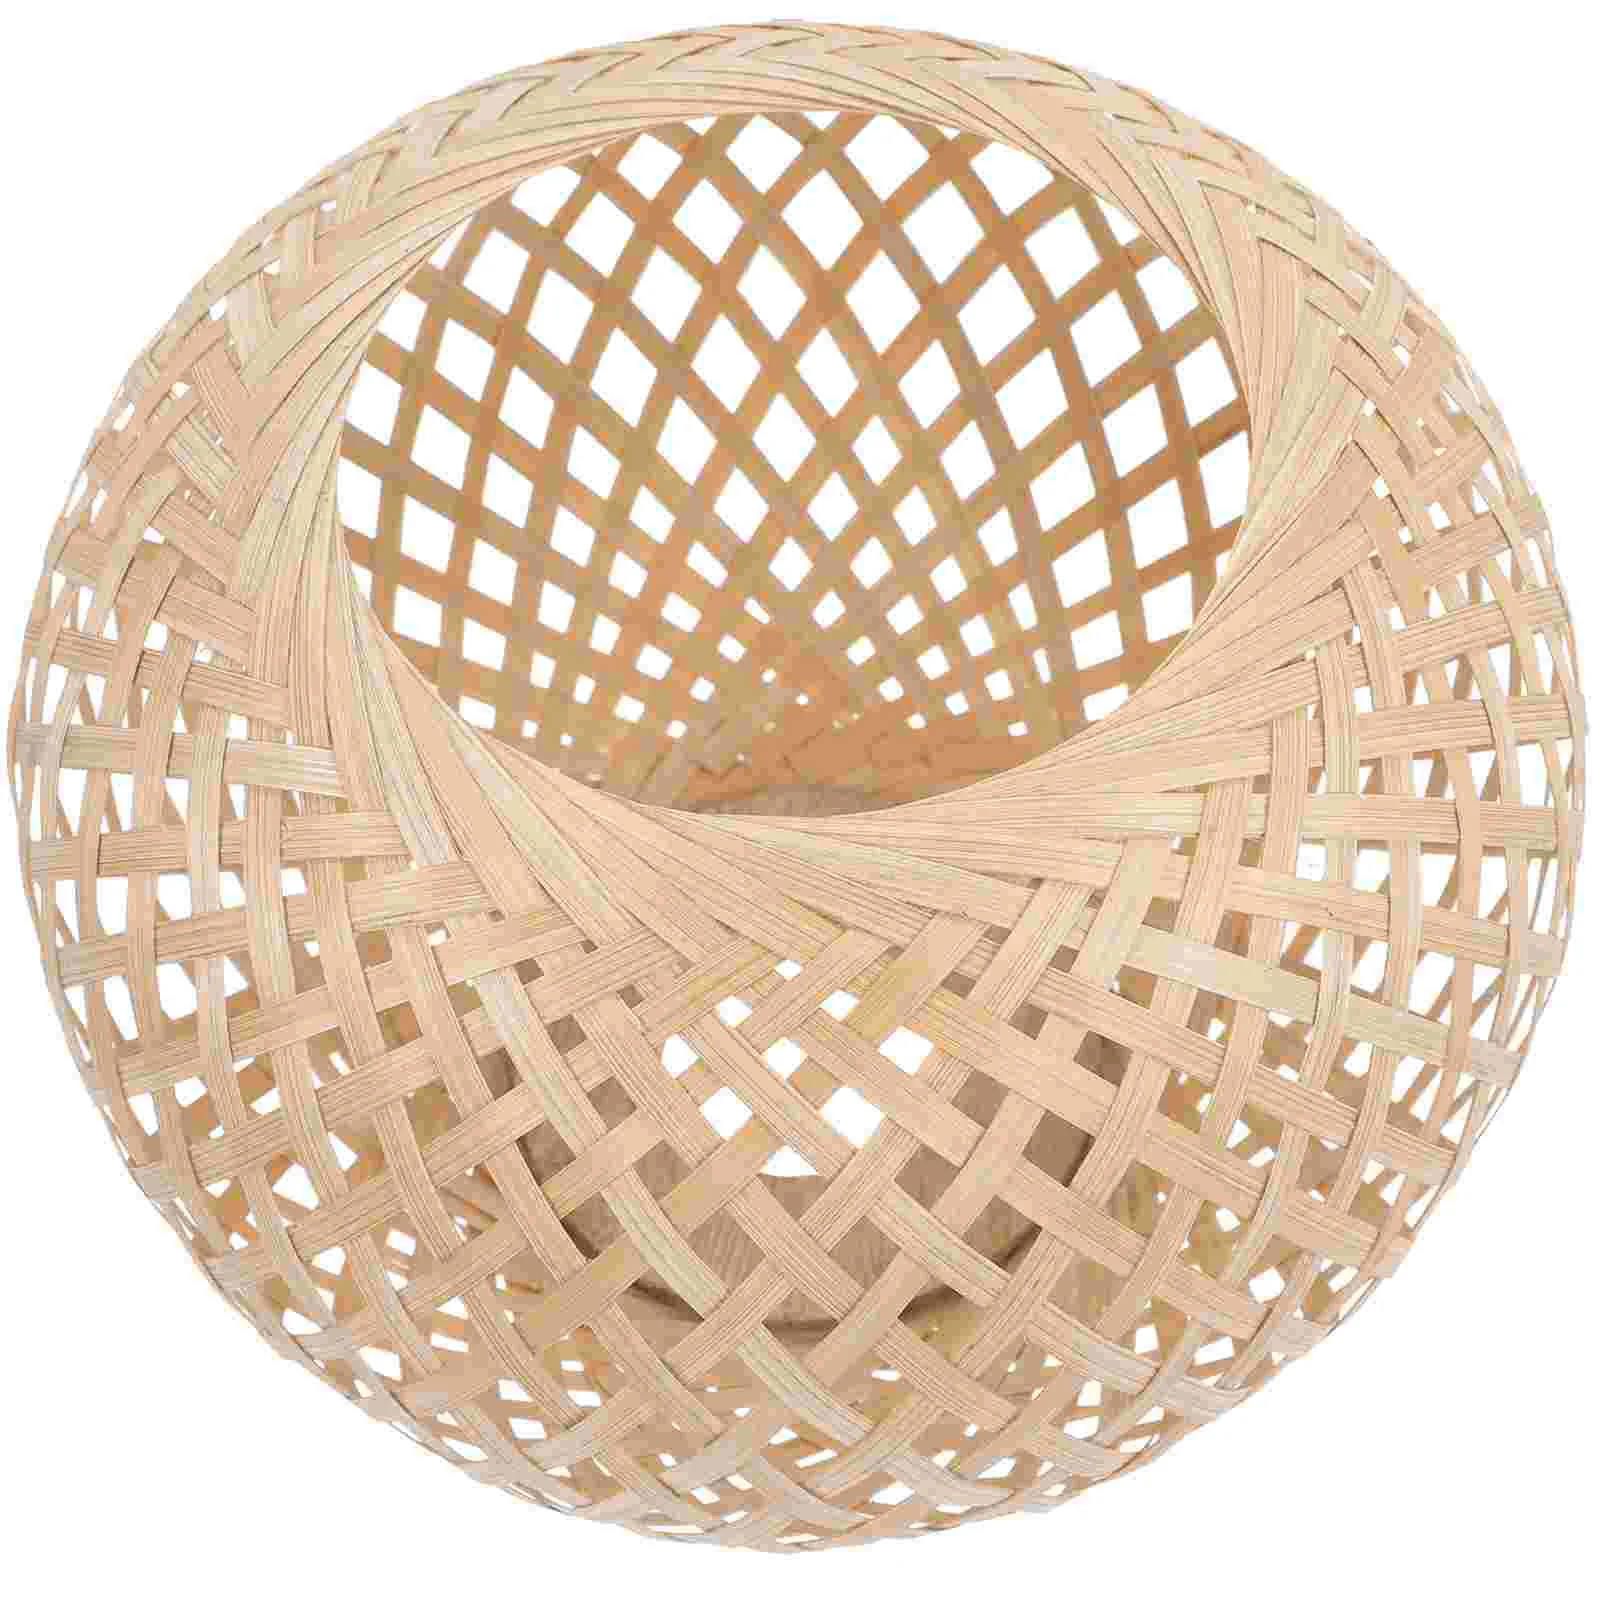 

Тканый бамбуковый чехол для лампы, чехол для лампы, тканый чехол для лампы в деревенском стиле, подвесной проекционный абажур